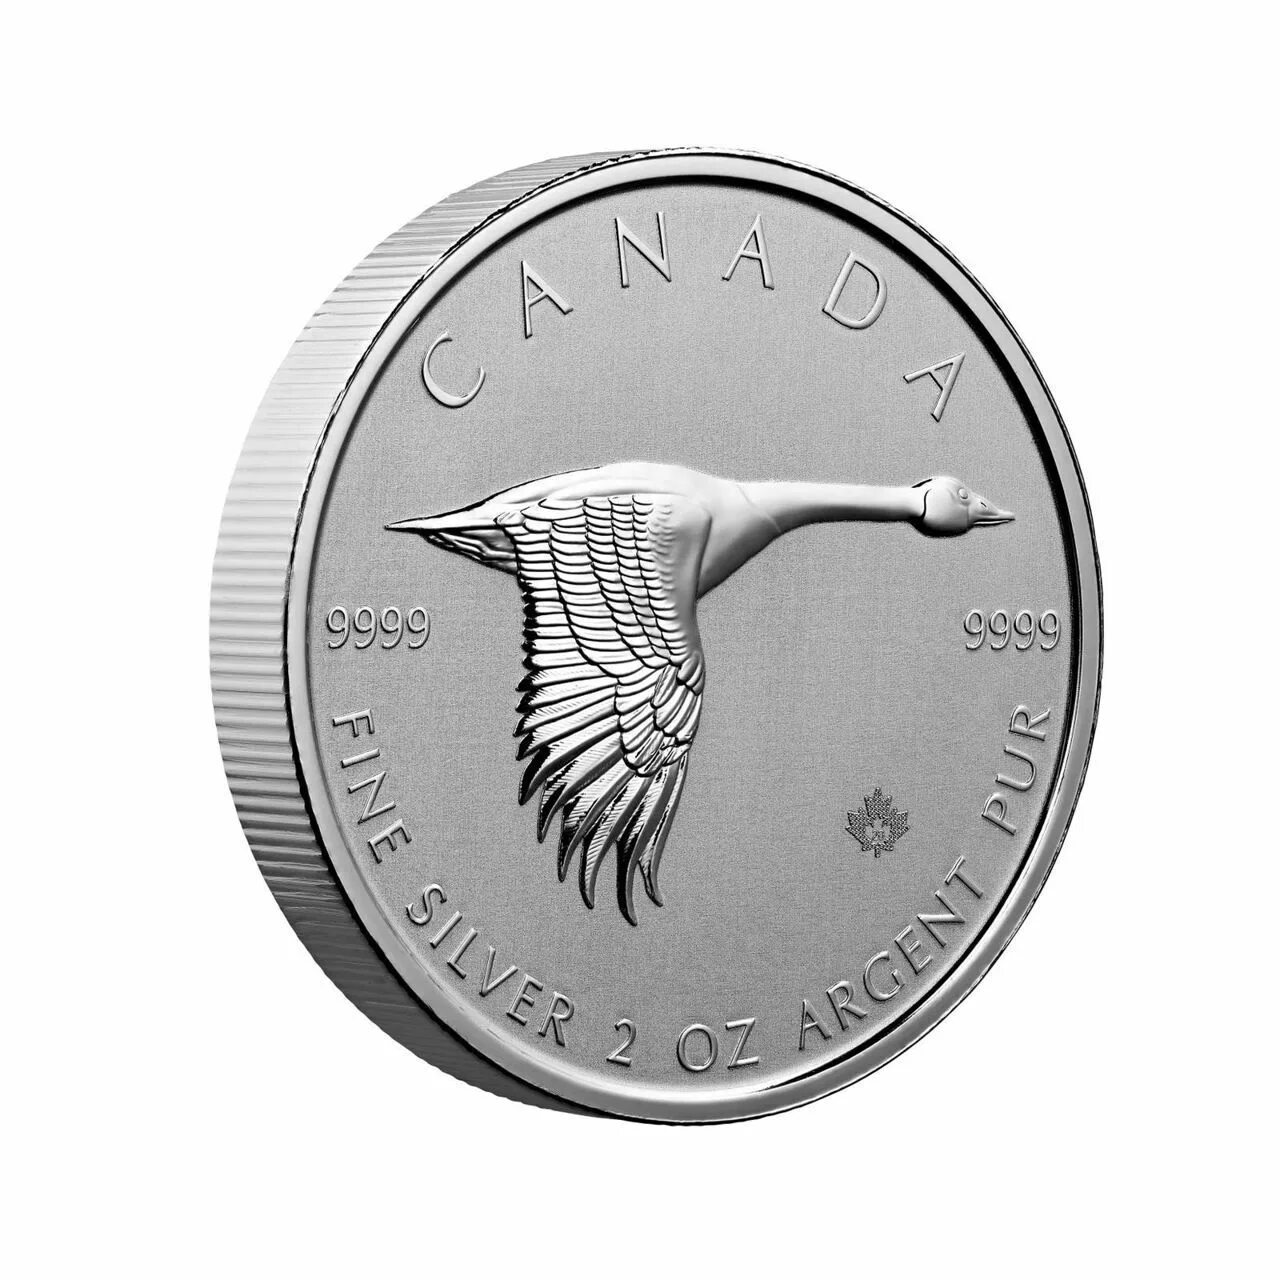 Canada Dollar монета. Монета Canada Goose Канада. Канадский доллар монета серебро. Канадская монета с уткой.